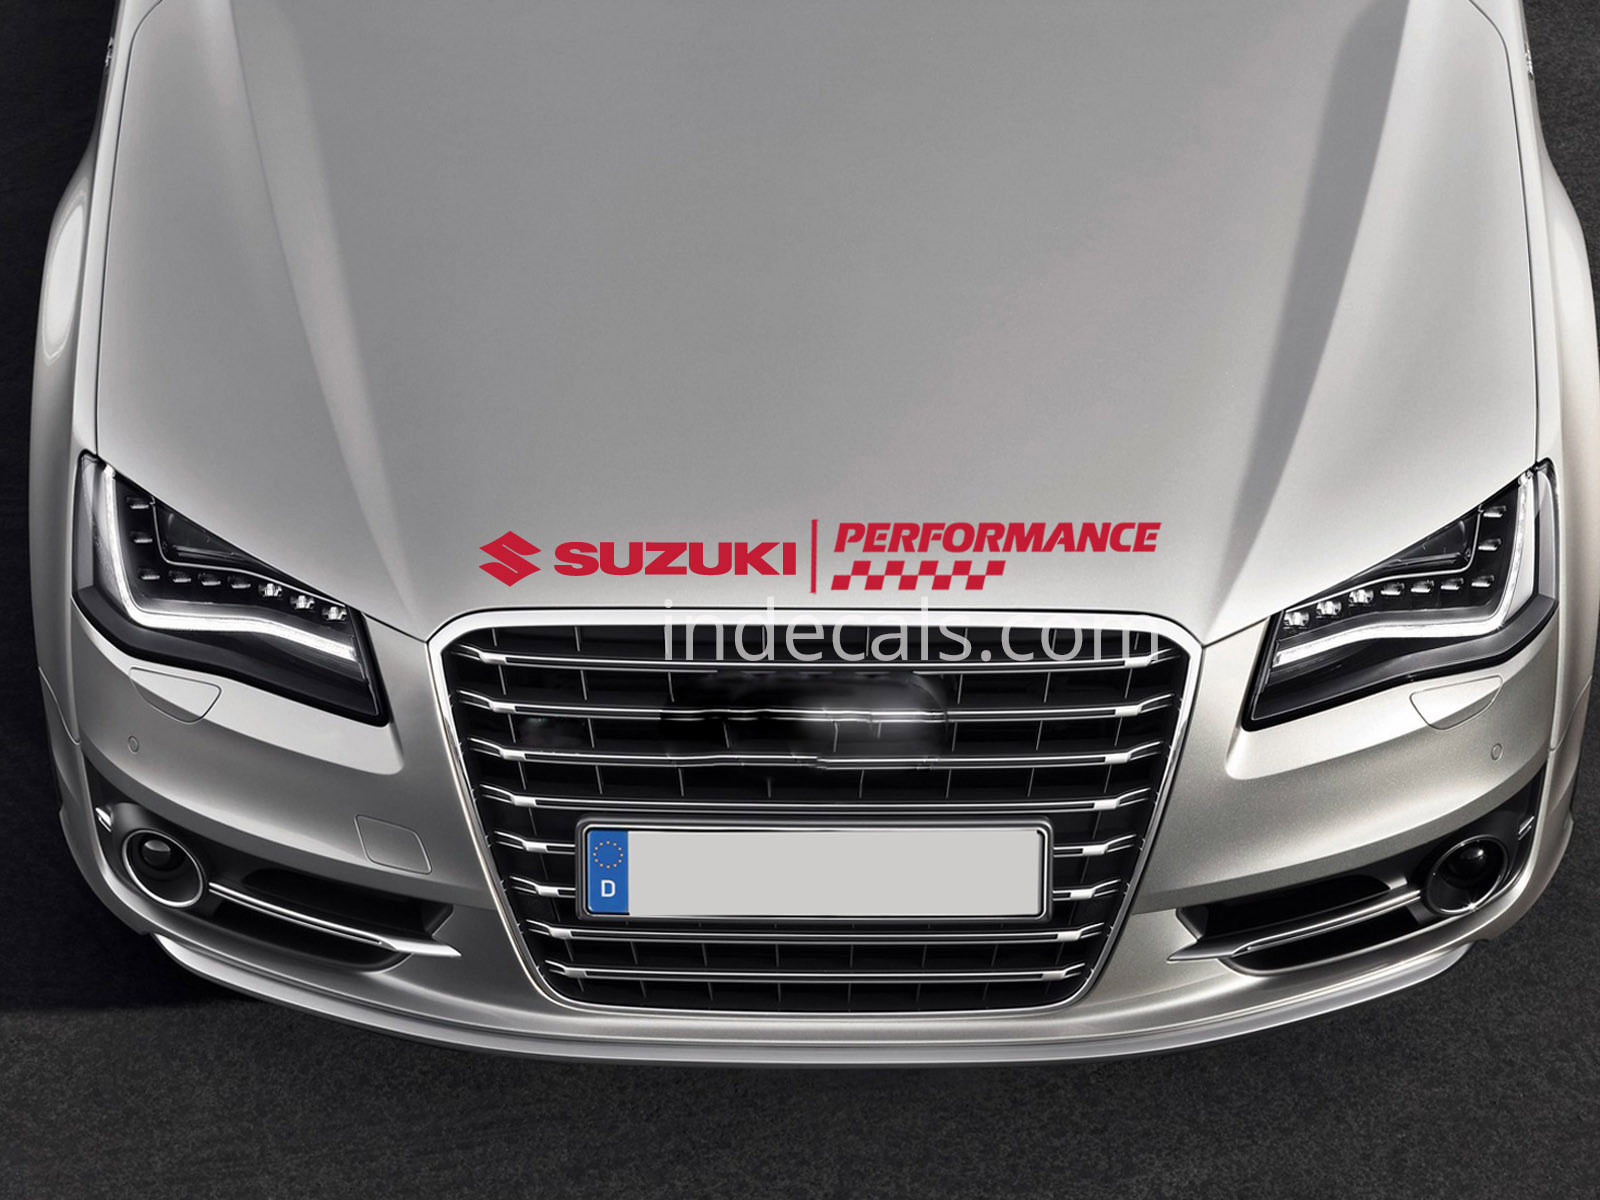 1 x Suzuki Performance Sticker for Bonnet - Red